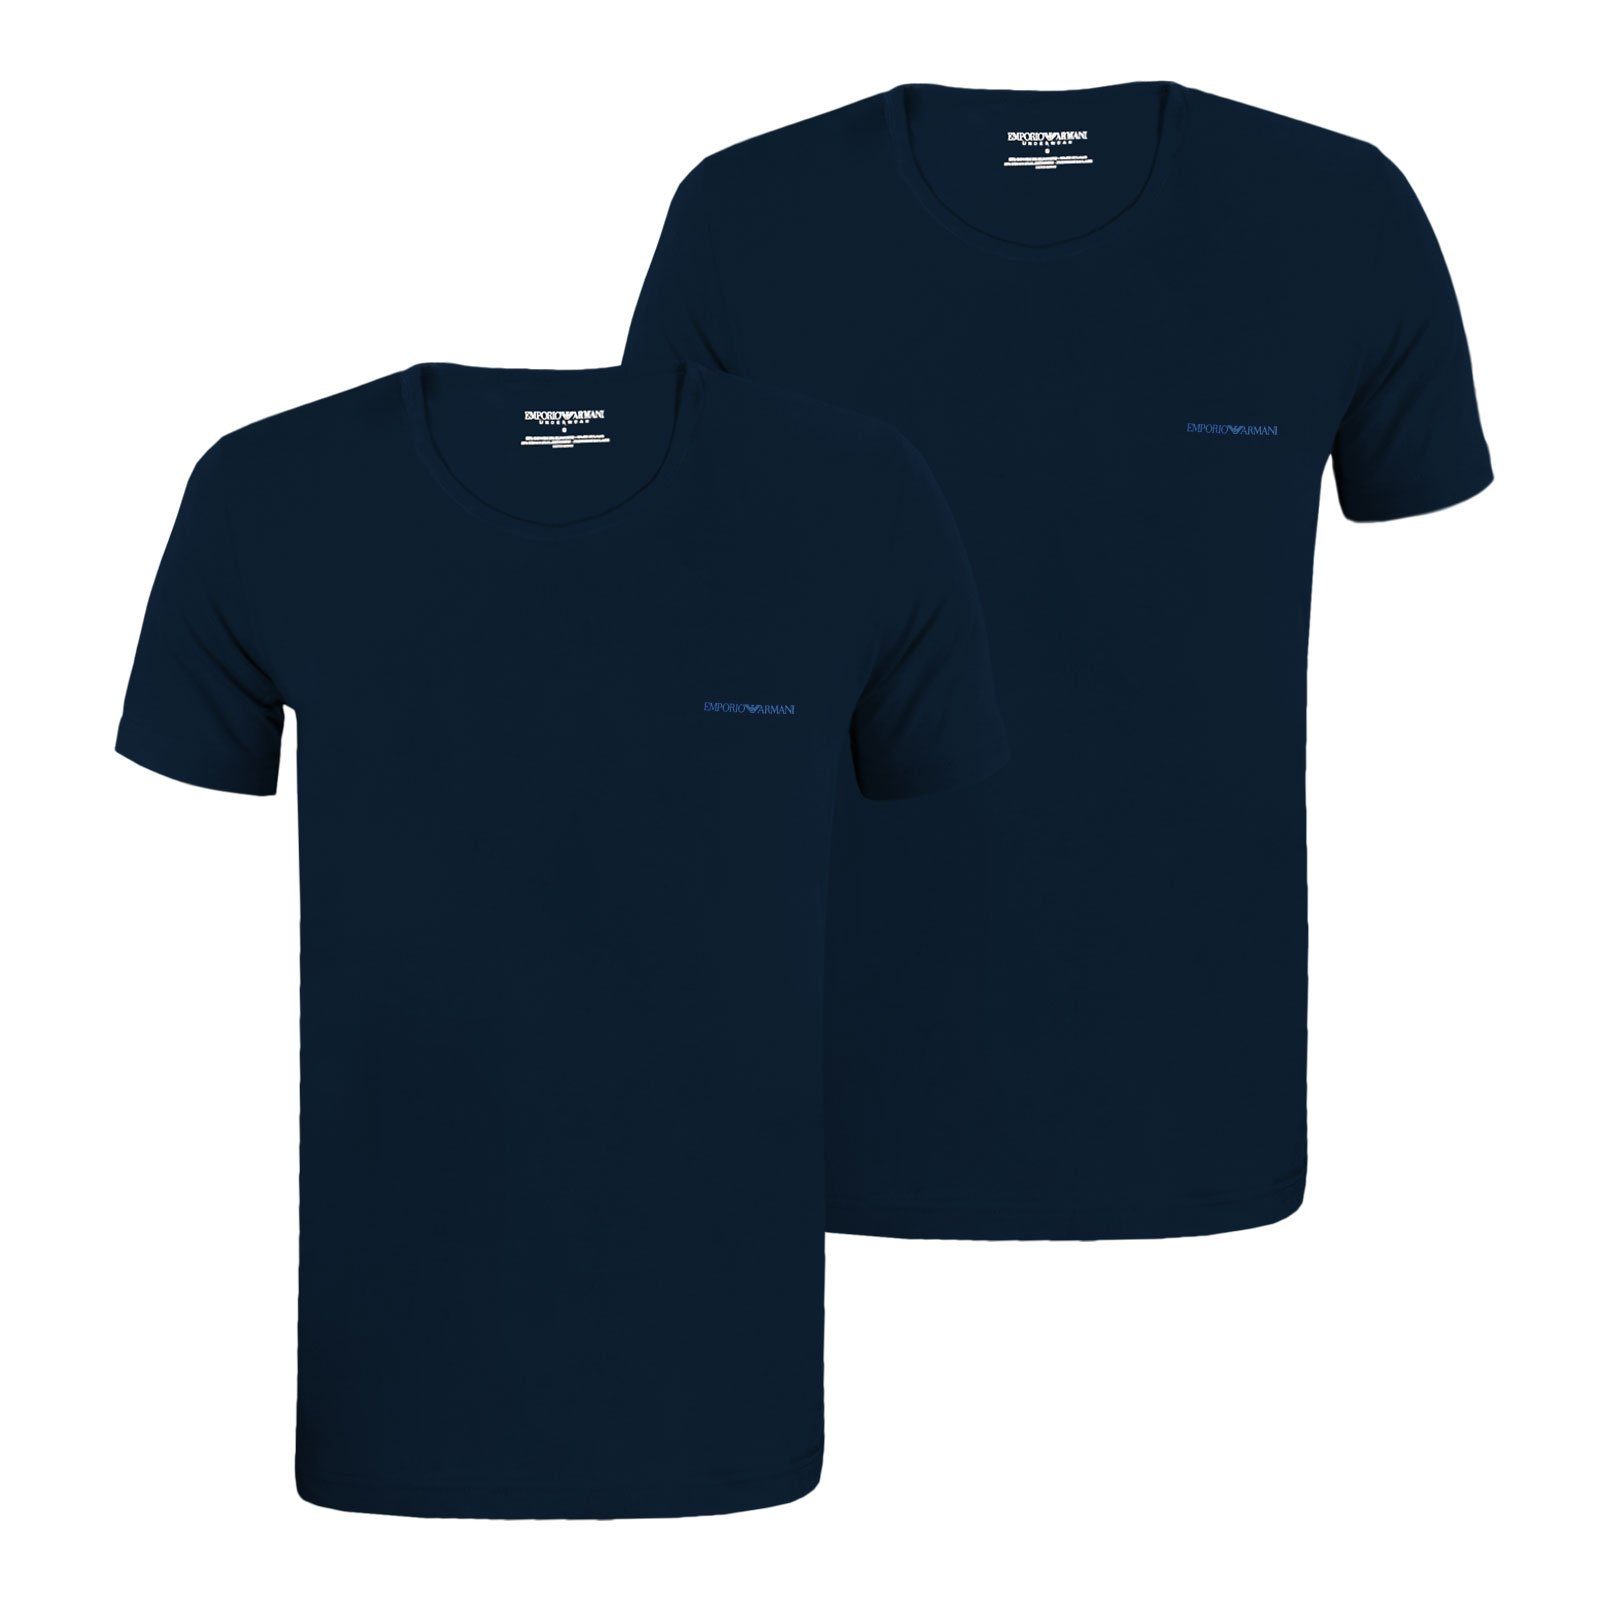 Emporio Armani T-Shirt Crew Neck T-Shirt Stretch Cotton mit Logo auf der Brust 27435 marine / marine